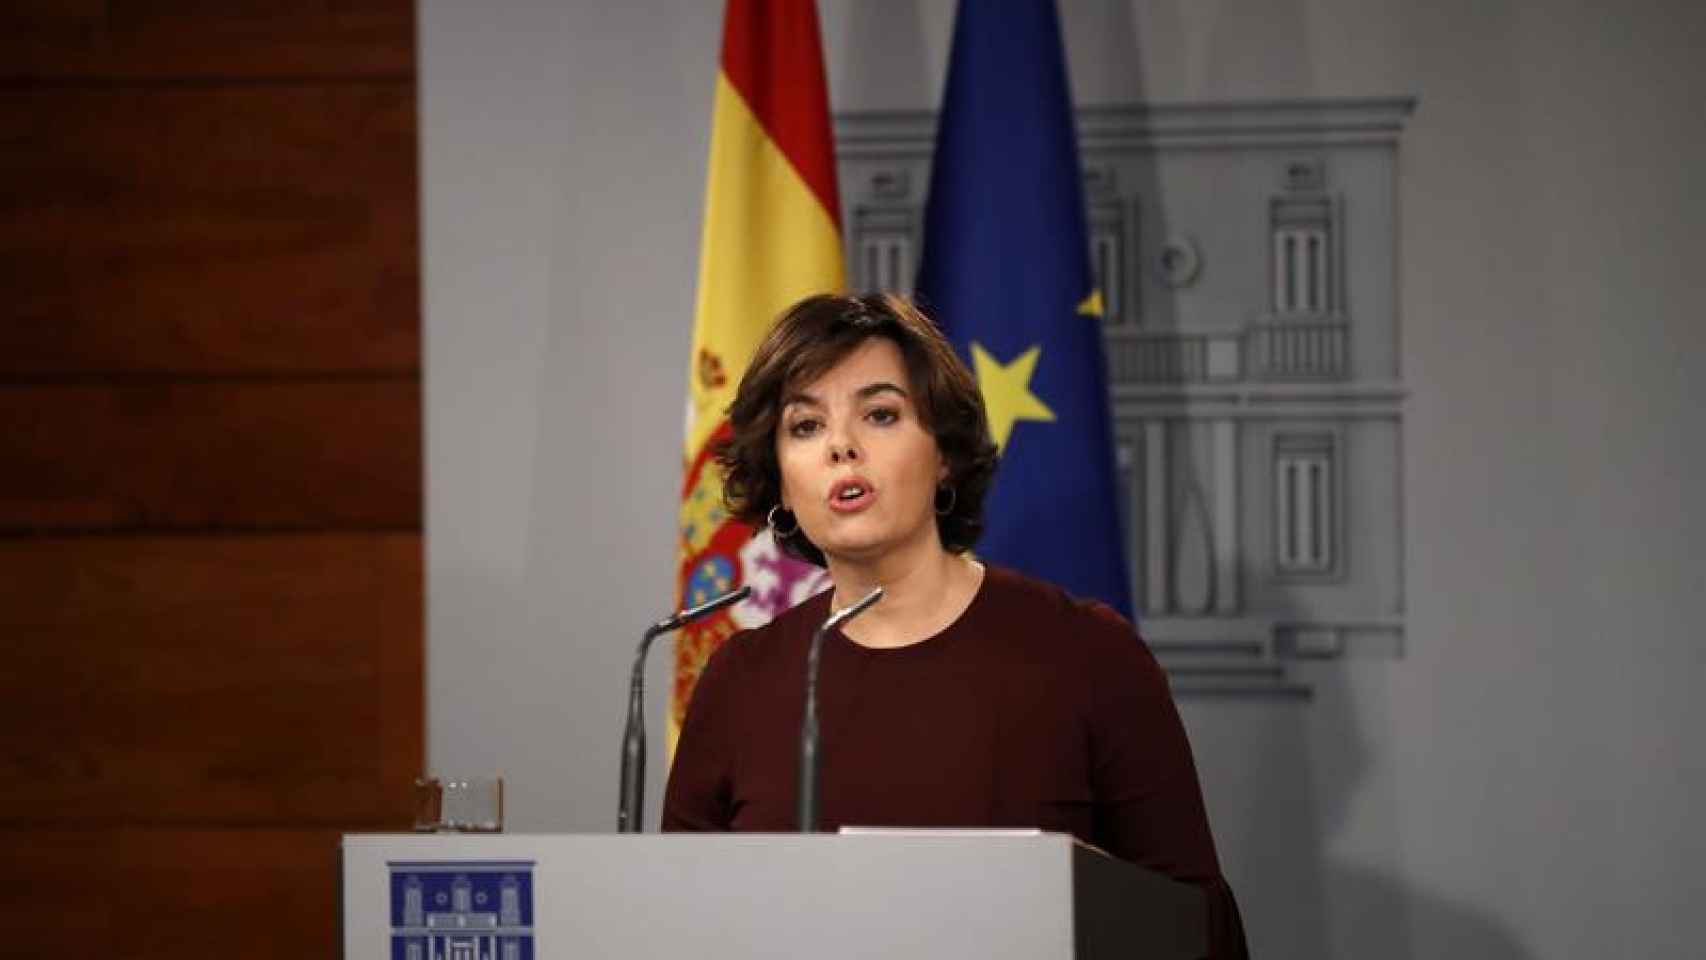 La vicepresidenta del Gobierno, Soraya Sáenz de Santamaría, durante su comparecencia esta noche en el Palacio de la Moncloa / EFE